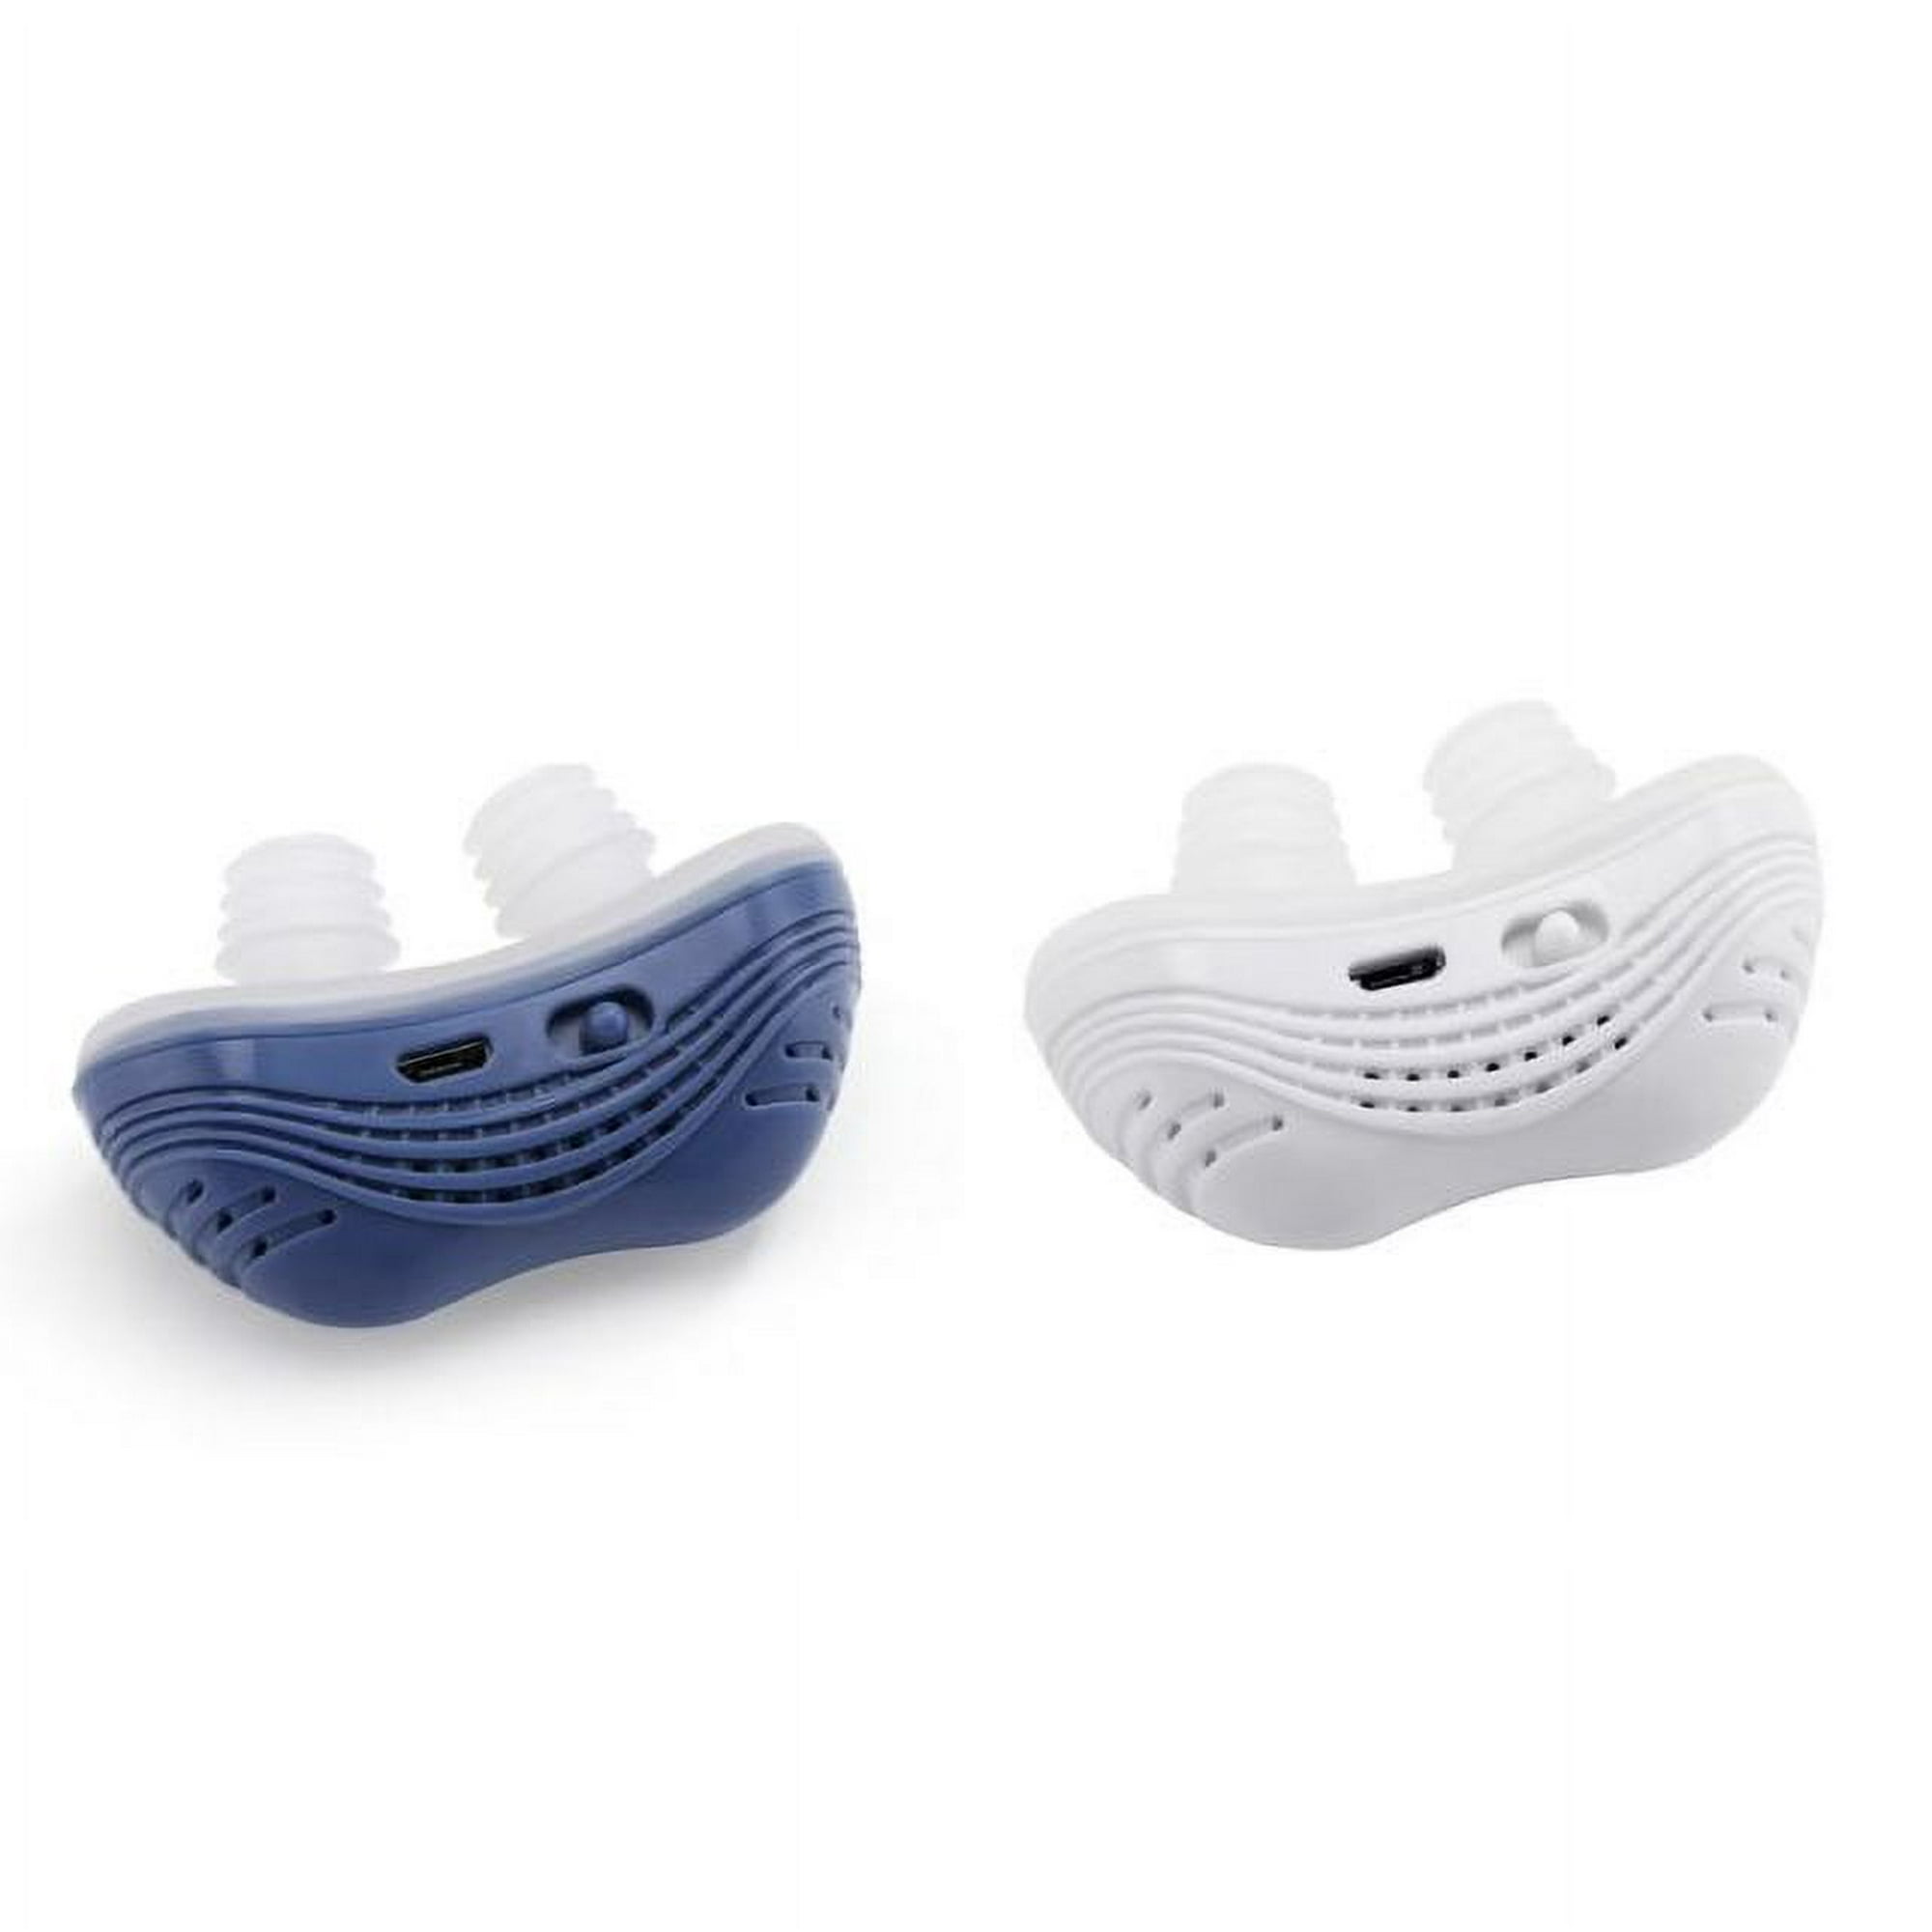 Dispositivo anti ronquidos tapones de ventilación nasal, solución de  ronquidos filtro purificador de aire Dilatadores nasales clip para detener